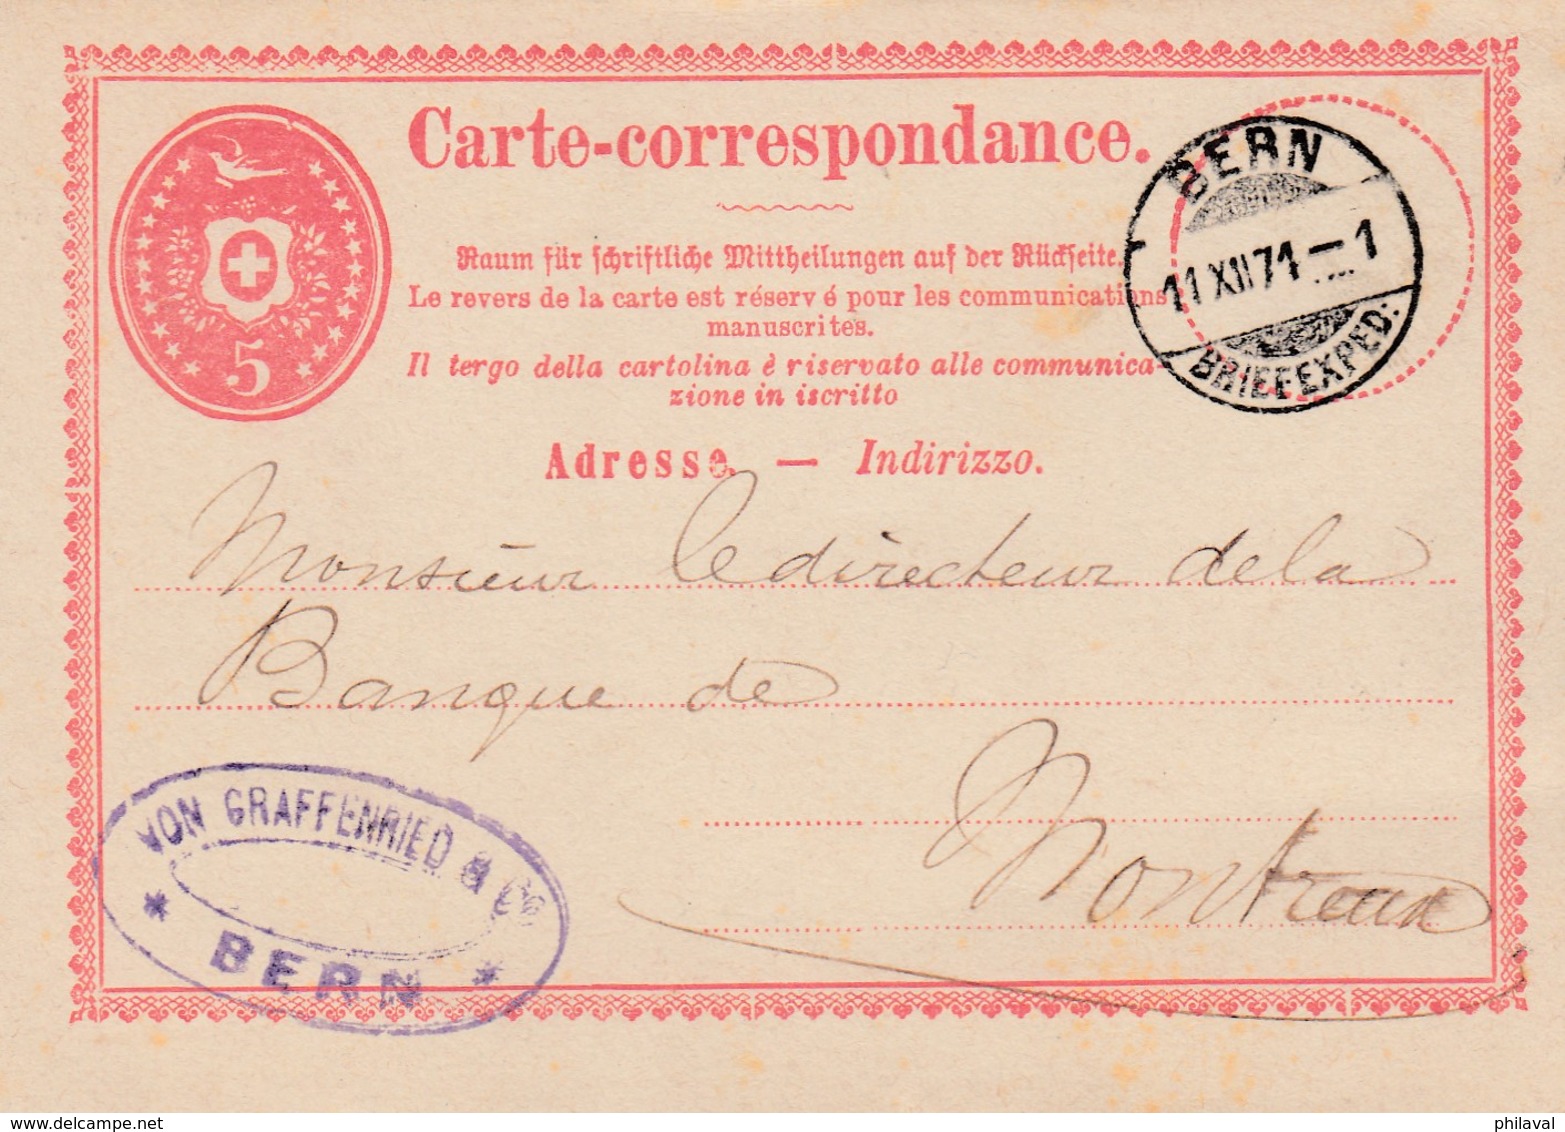 Carte Corespondance De La Firme Von Graffenried, Bern,  Obl Le 11.XII.1871, à Dest Du Directeur De La Banque De Montreux - Stamped Stationery